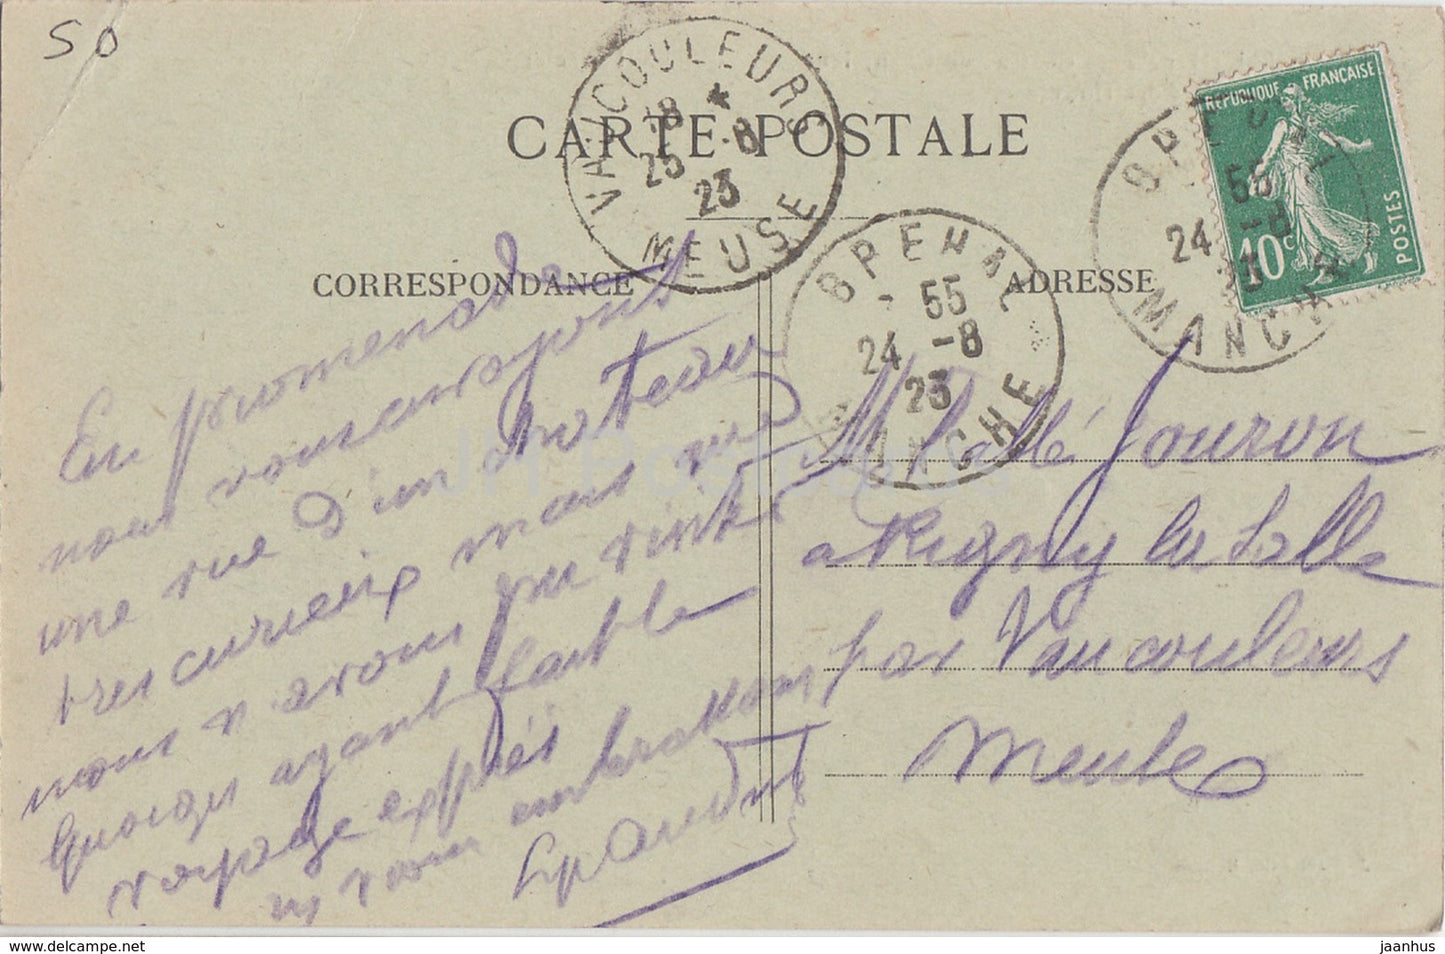 Brehal - Chateau de Chanteloup - Cote des Douves - castle - 8 - old postcard - 1923 - France - used